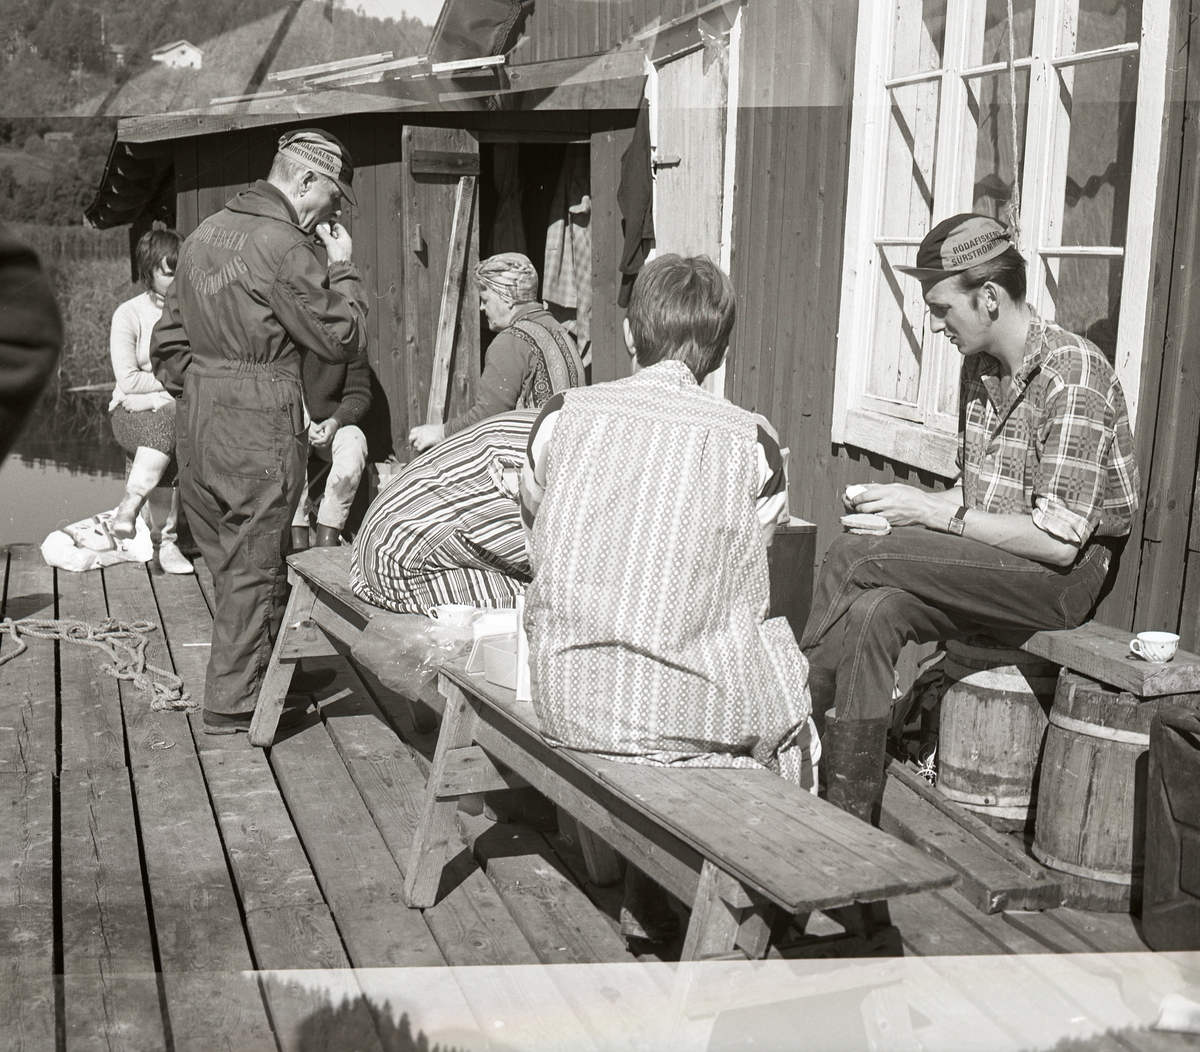 Några personer sitter utanför en byggnad och fikar, Ulvön i Örnsköldsvik, augusti 1970.